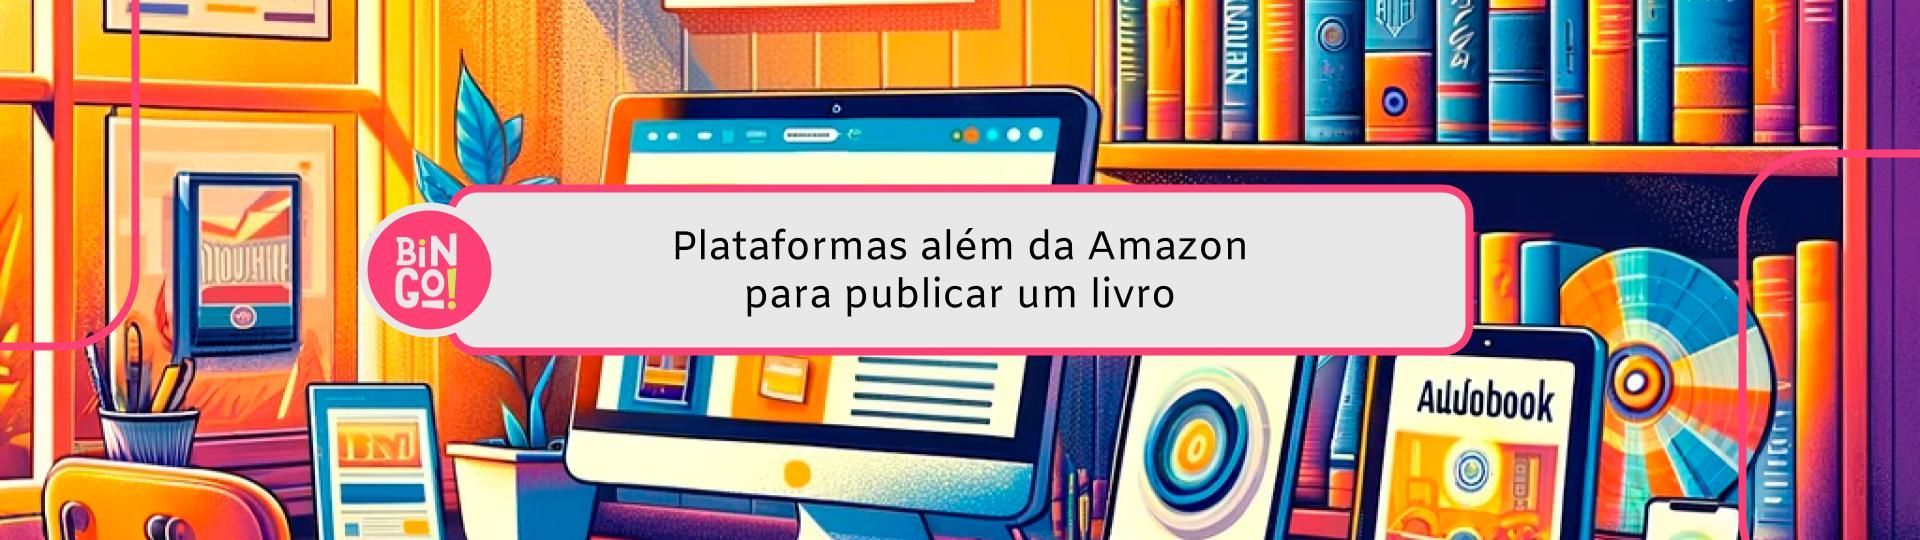 plataformas-alem-da-amazon-para-publicar-um-livro